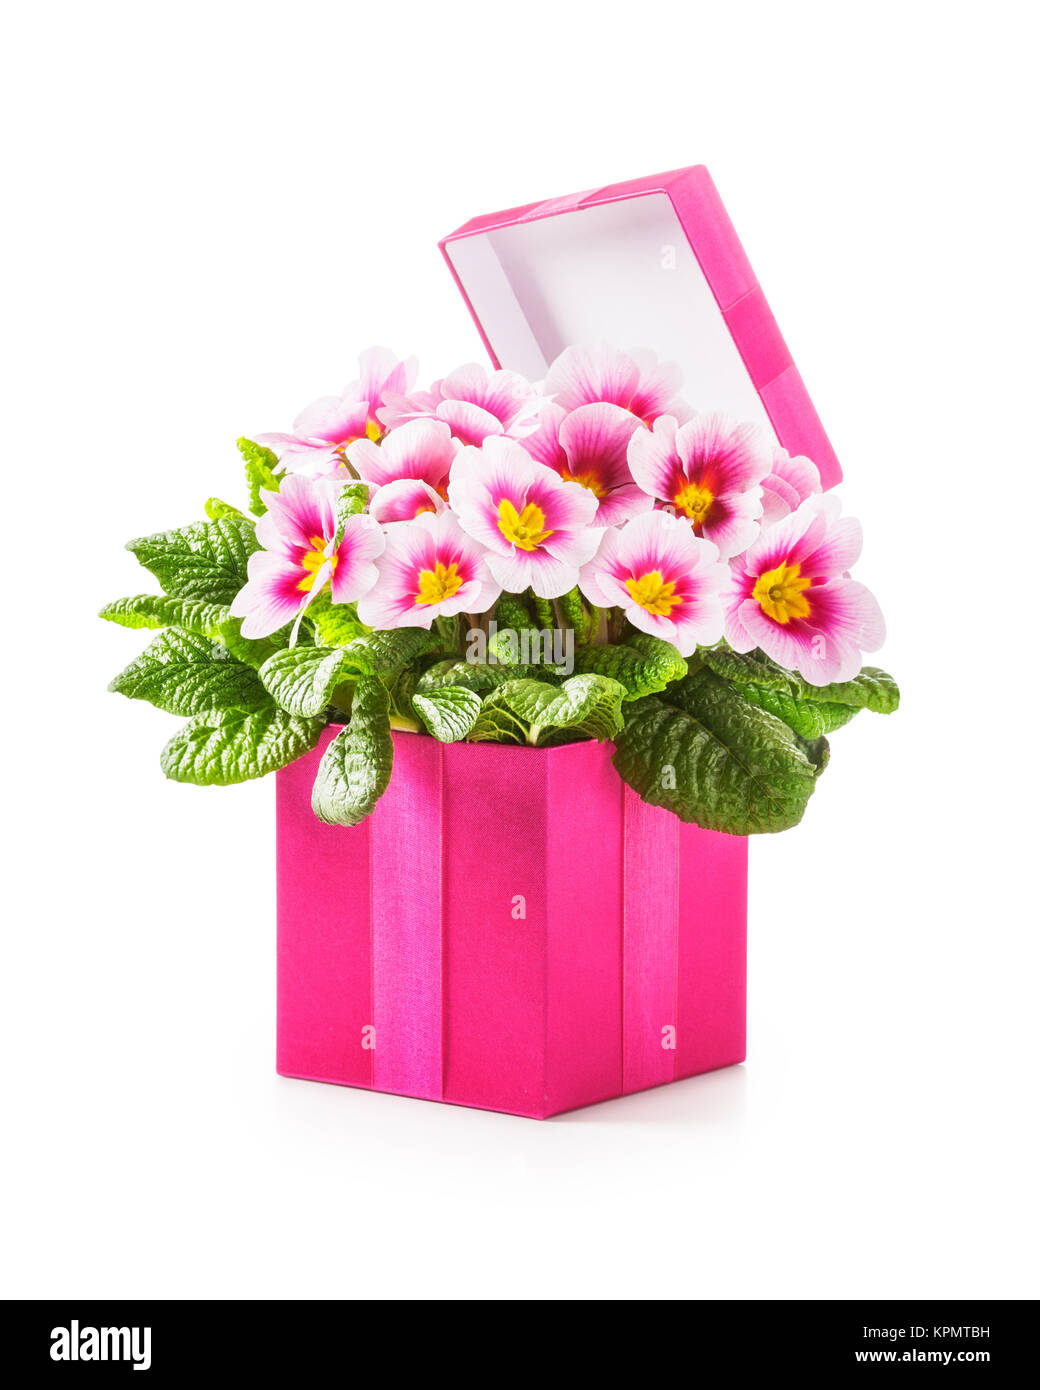 Regalos para mamá para el día de la madre, regalos de flores rosas para  mujeres, regalos para el día de la madre, regalos para mamá de hija e hijo,  rosa iluminada en